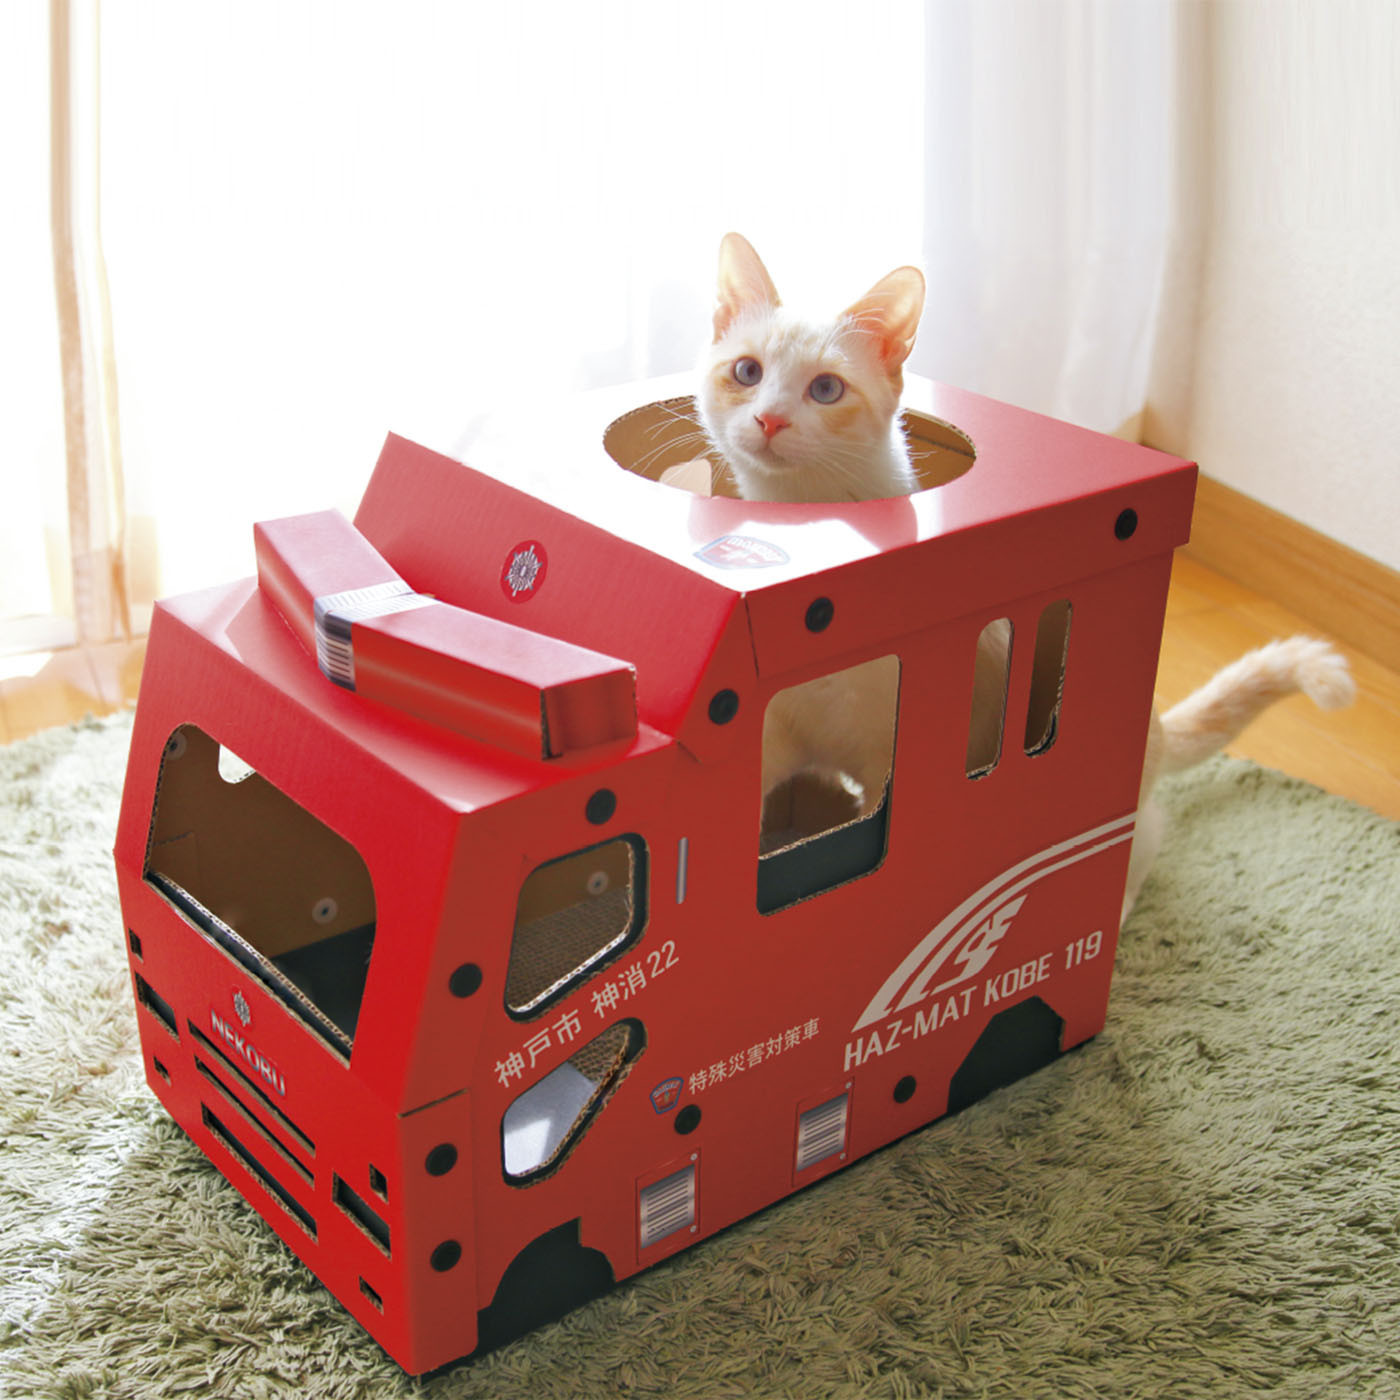 神户市消防局推出猫抓板提醒主人重视宠物火灾